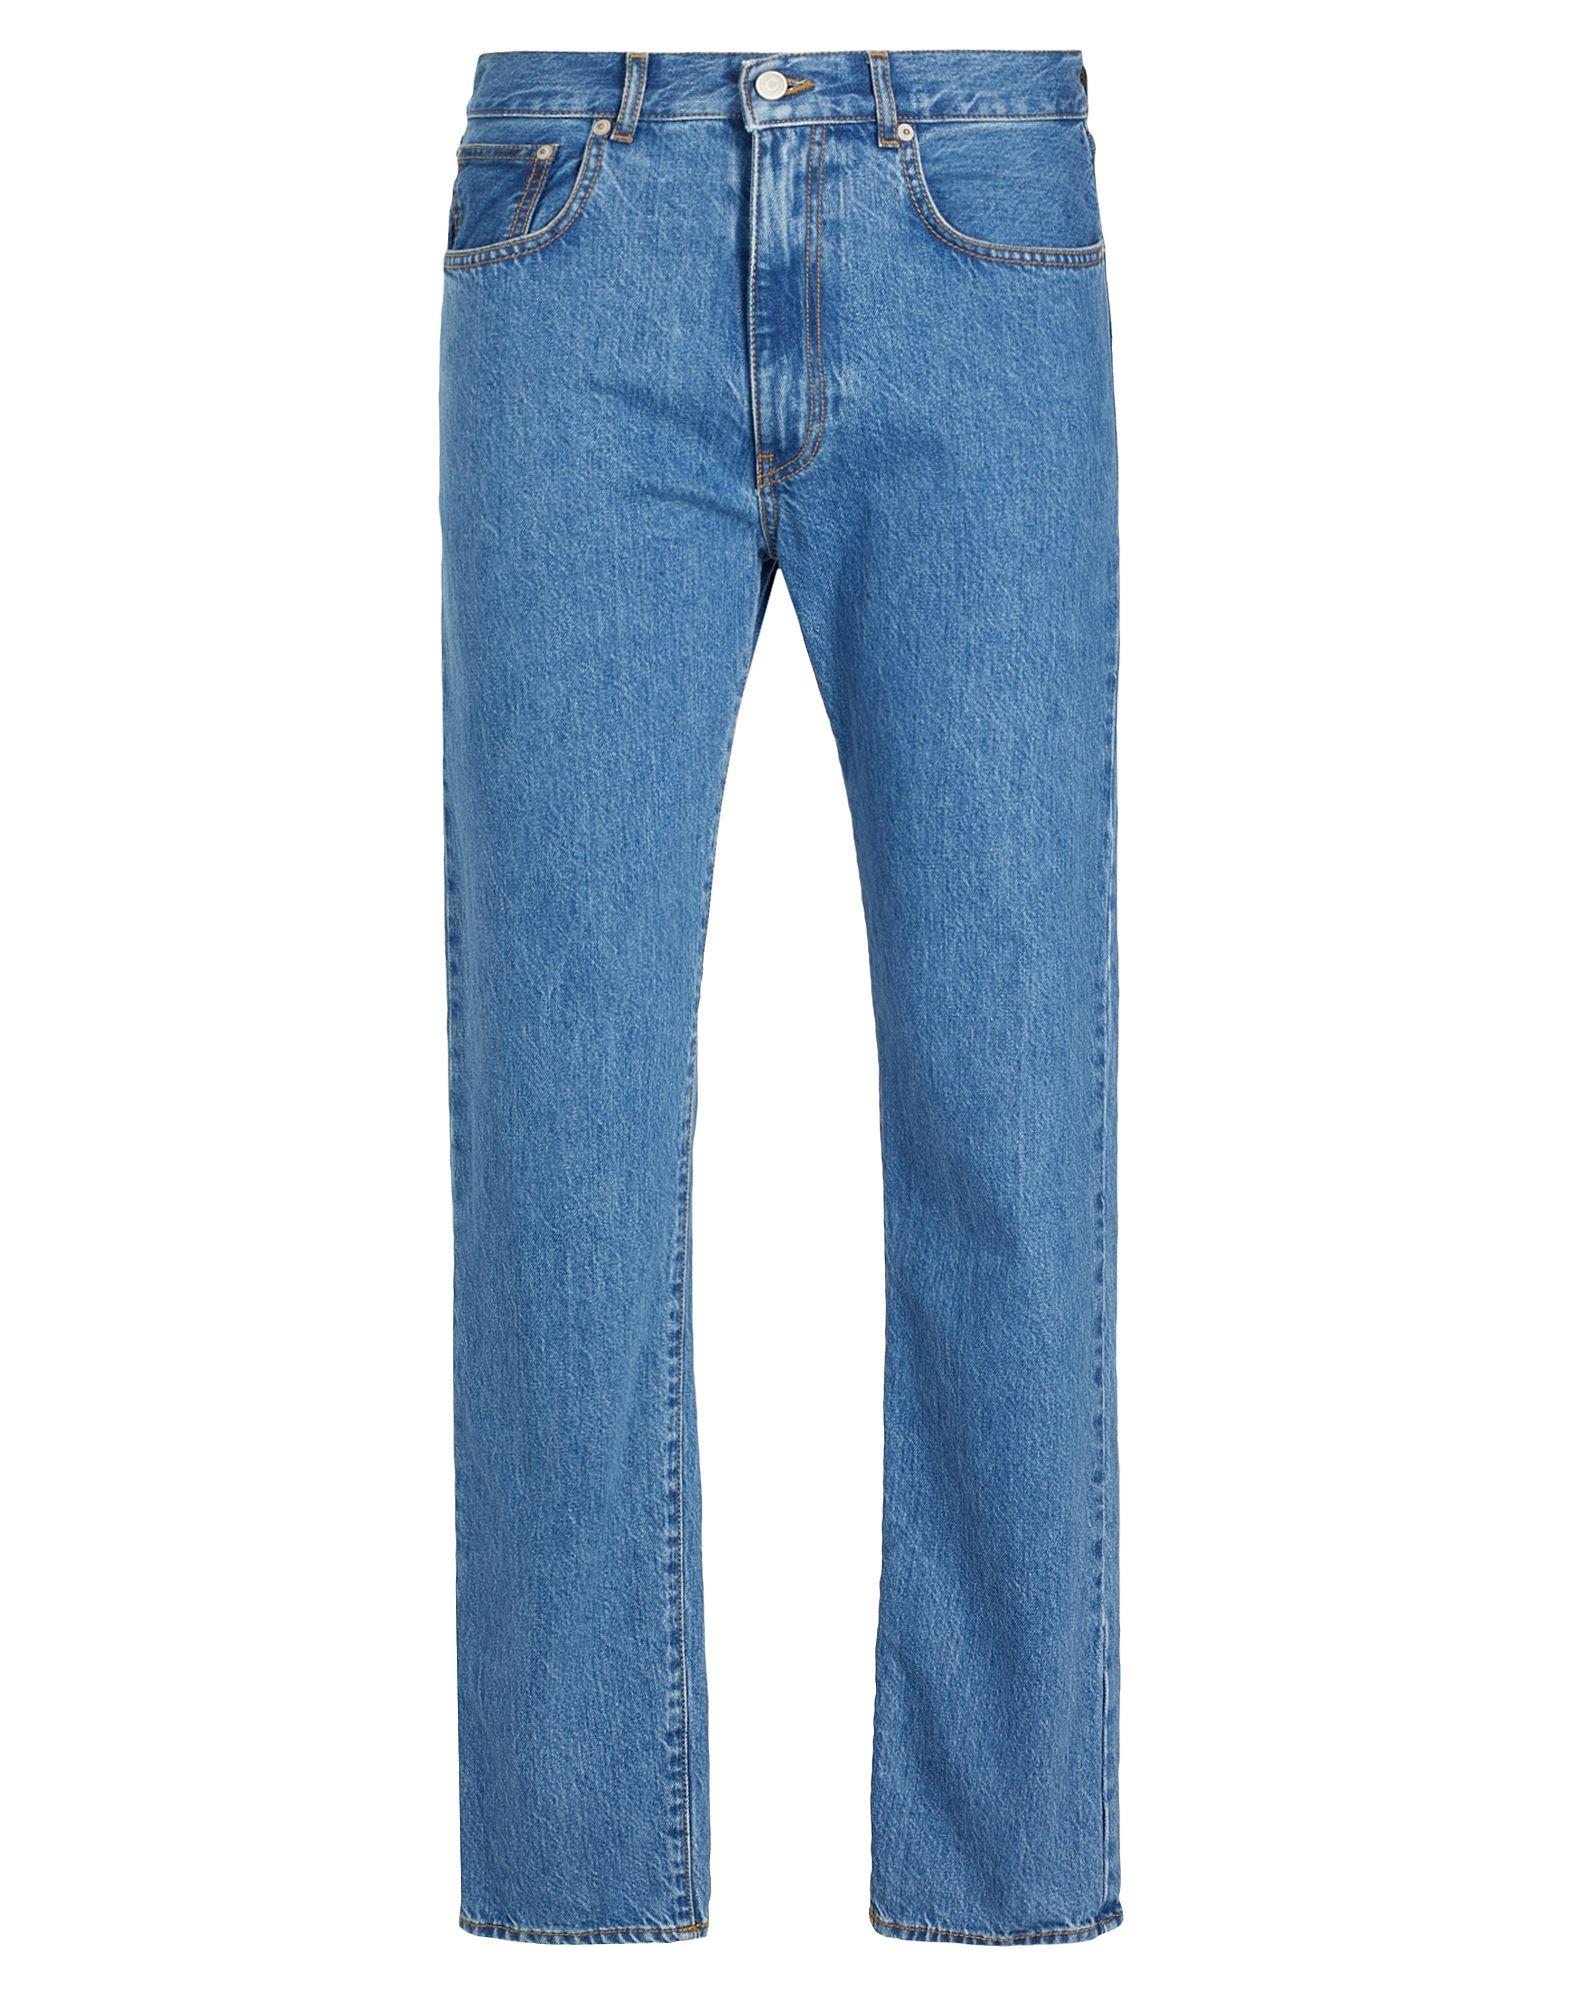 Uomo Abbigliamento da Jeans da Jeans dritti Pantaloni jeansGAUDI in Denim da Uomo colore Blu 